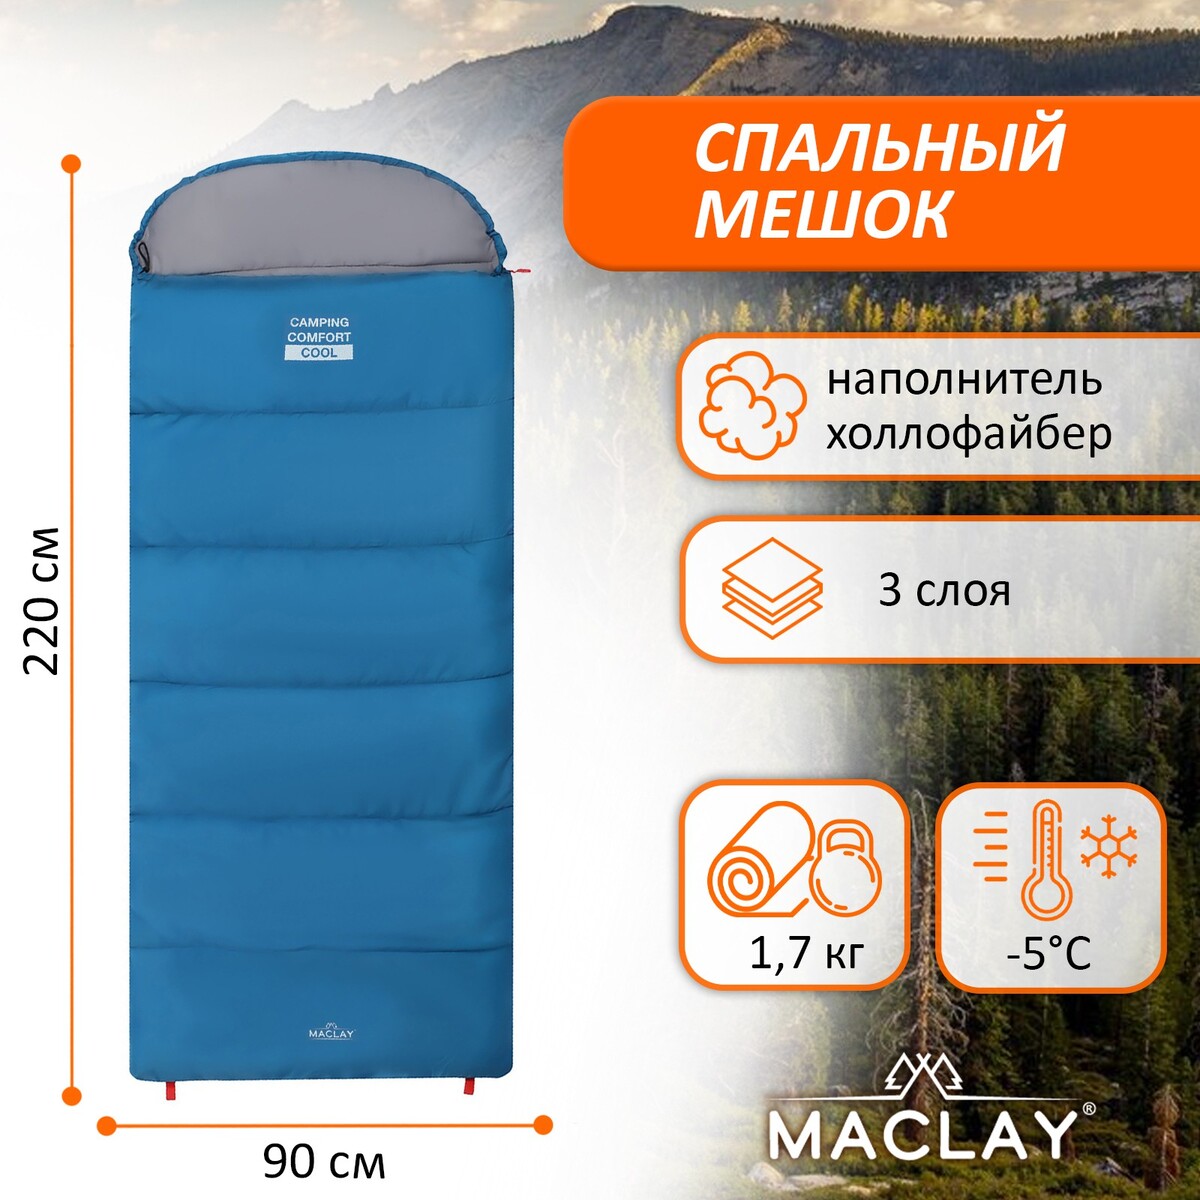 Спальный мешок maclay camping comfort cool, 3-слойный, левый, 220х90 см, -5/+10°с спальник одеяло maclay camping comfort cool 3 слойный правый 220х90 см 5 10°с